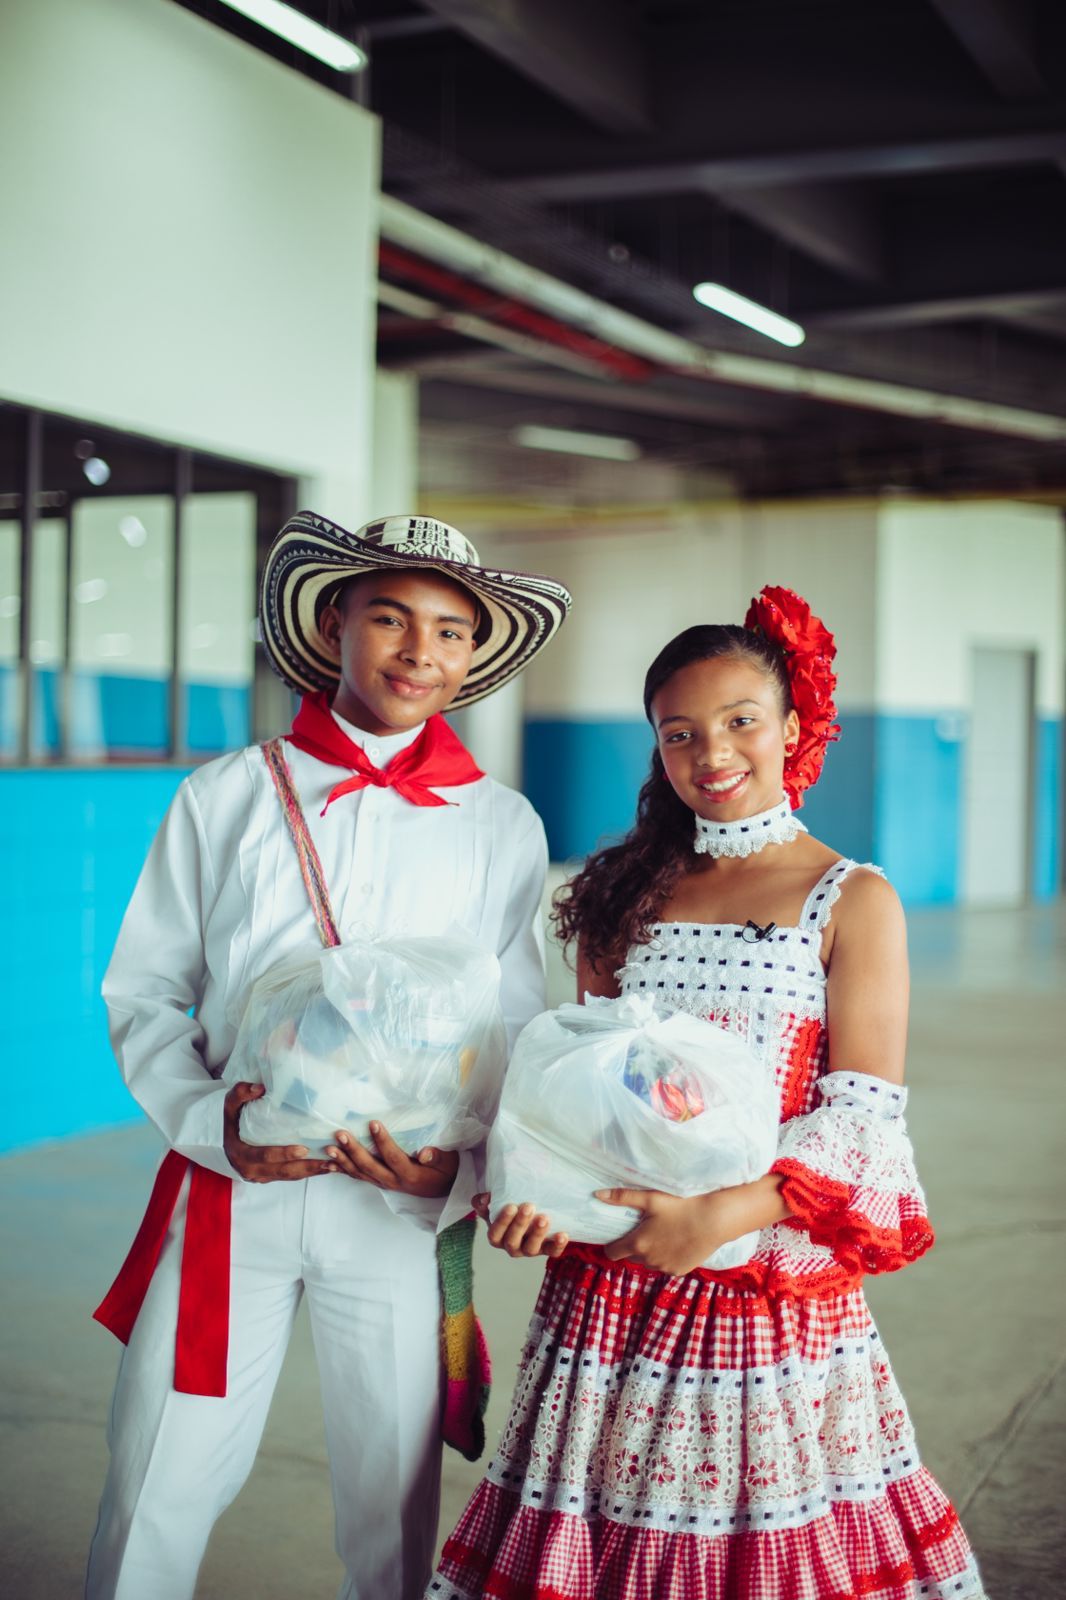 Los Reyes del Carnaval de los Niños, Tahiana y Diego, sumaron sus ayudas a las familias del Atlántico